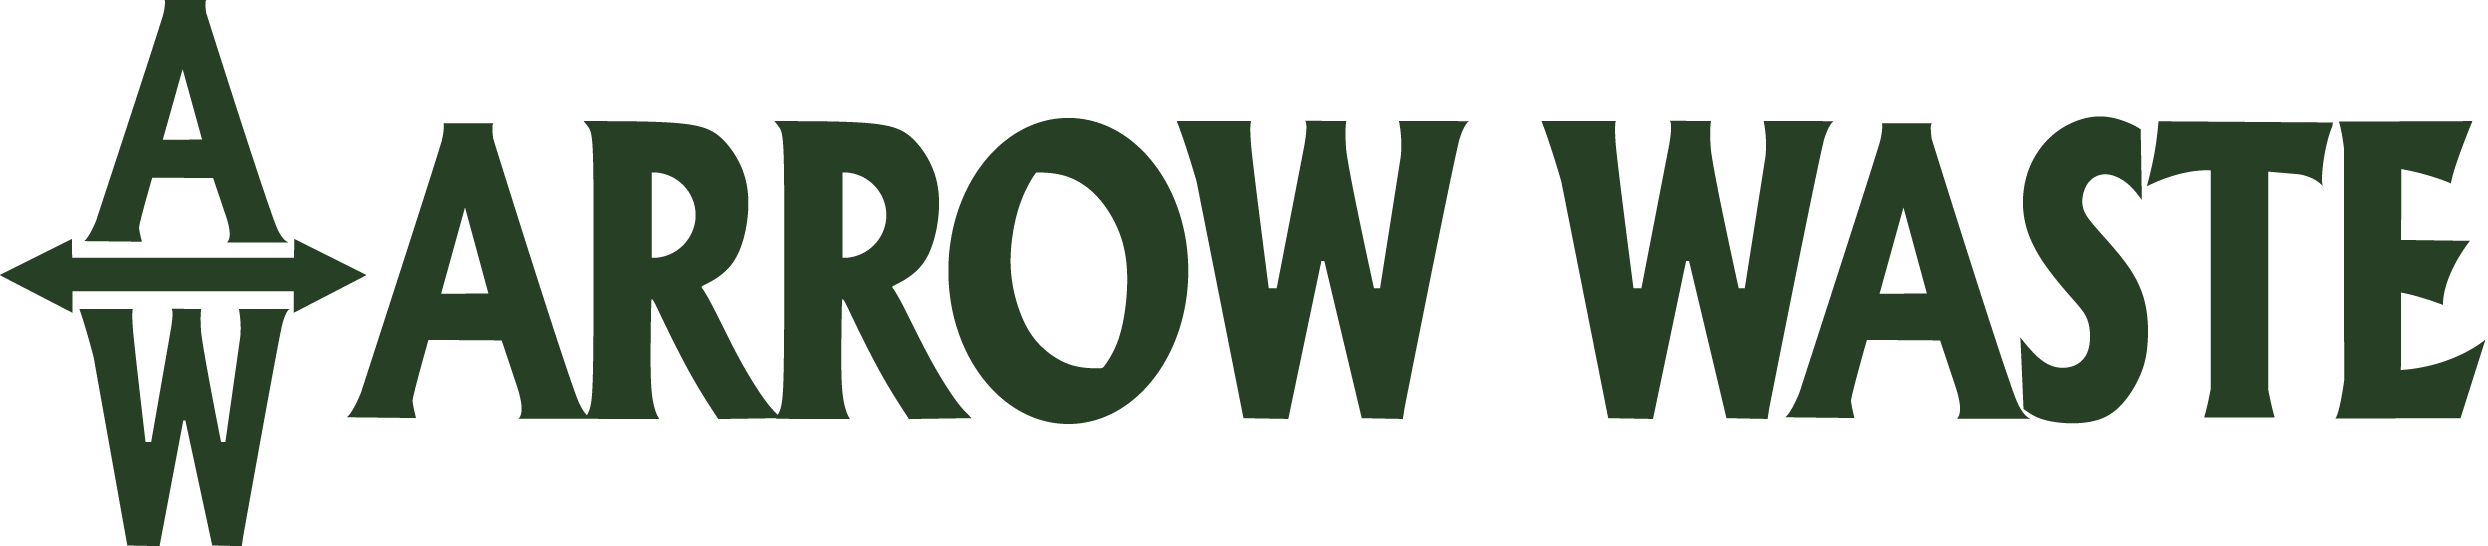 arrowwaste-logo-green